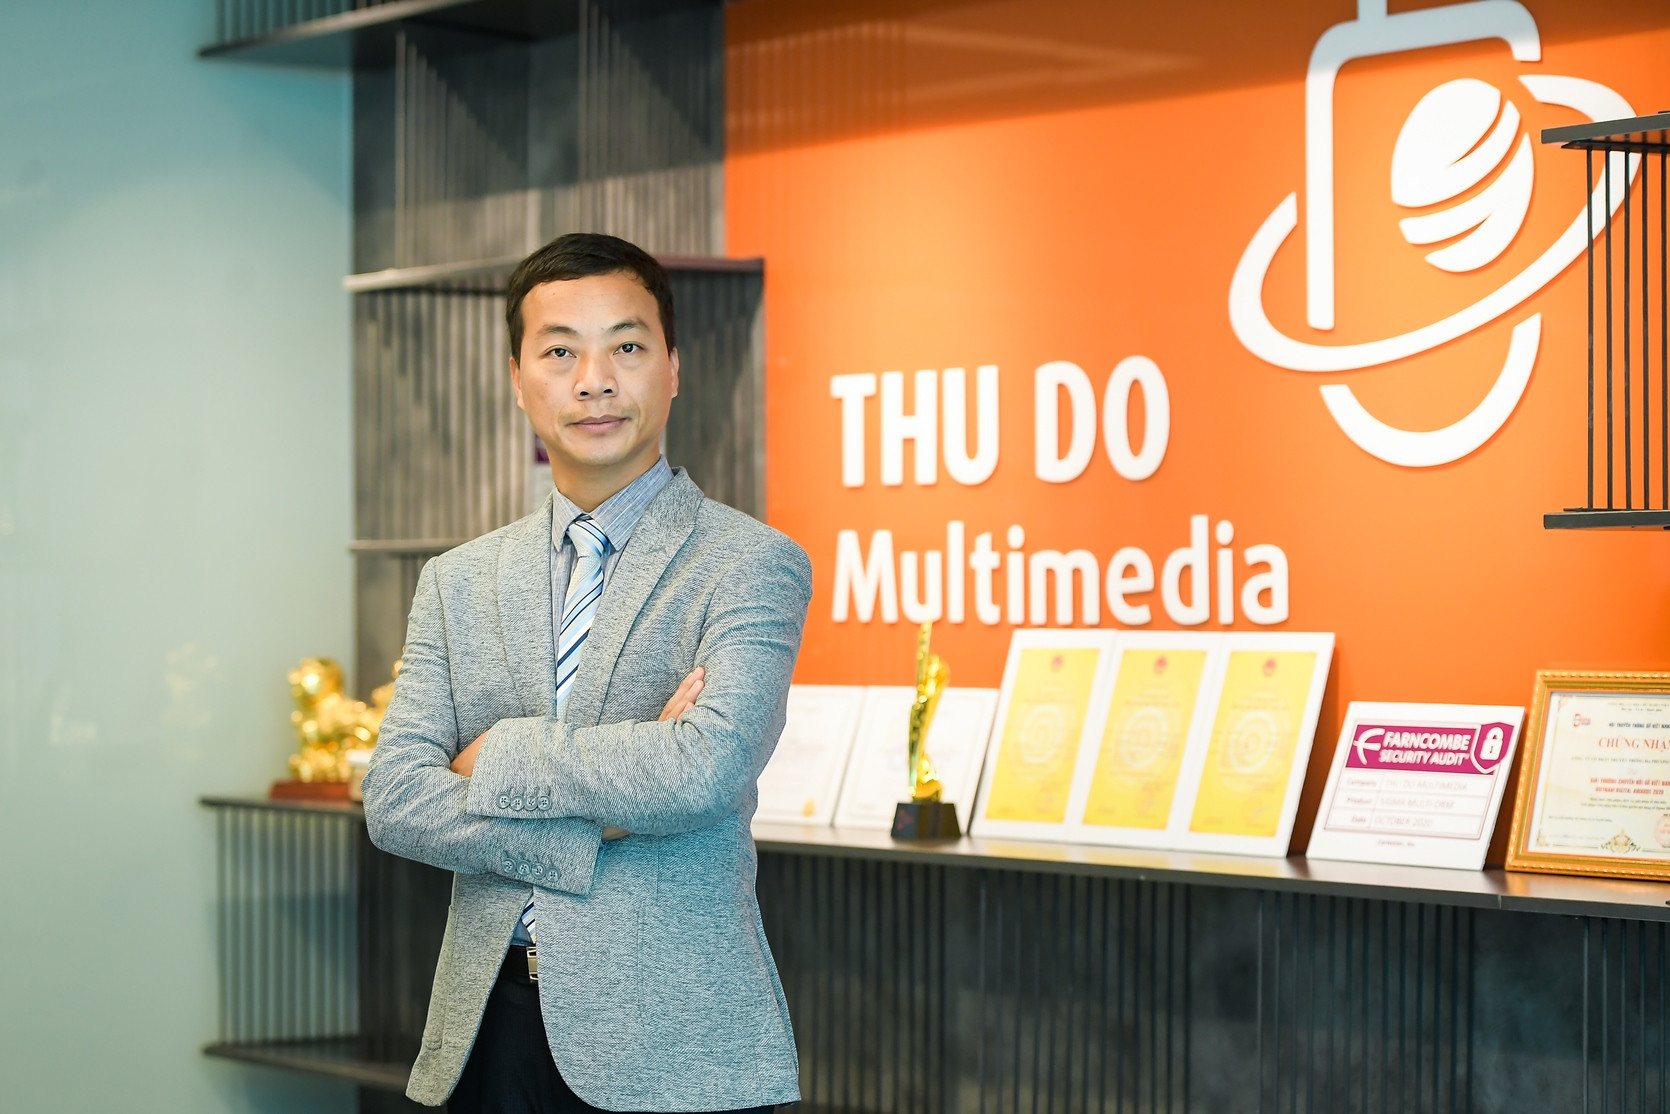 CEO Thủ Đô Multimedia: Chìa khóa công nghệ mở cánh cửa mới của nền kinh tế sáng tạo - Ảnh 15.